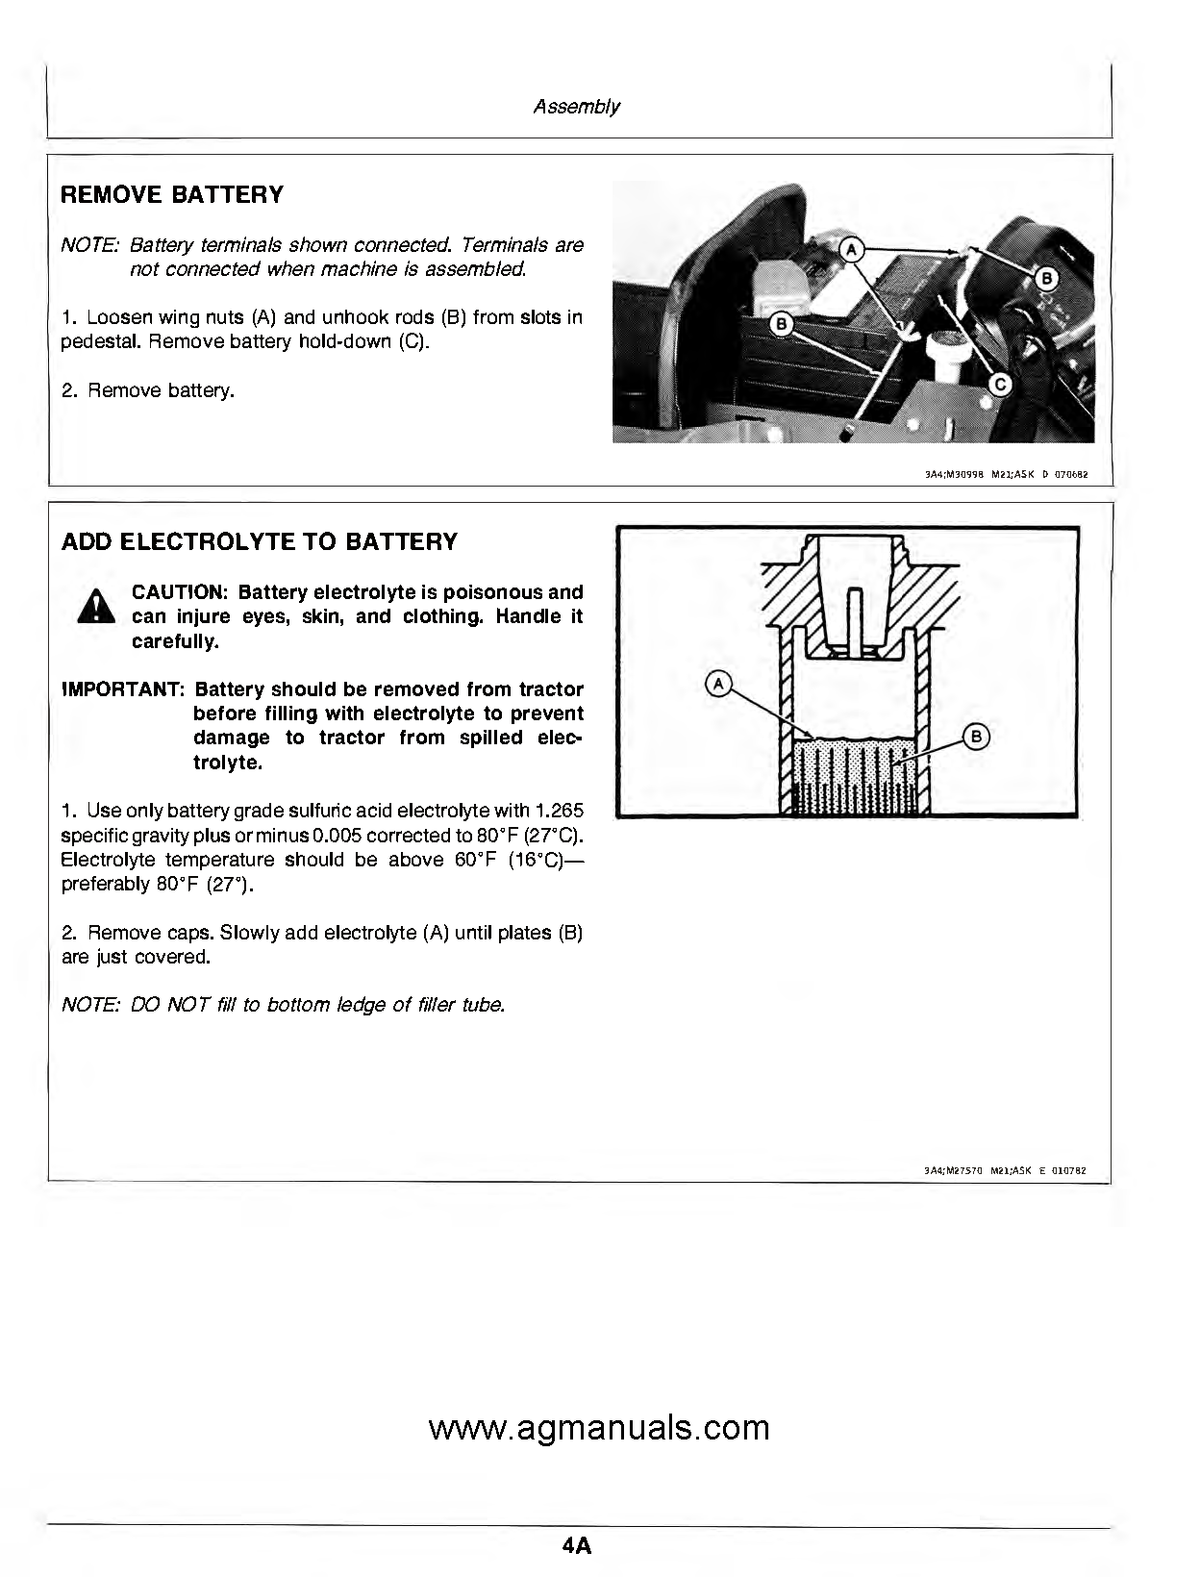 John Deere 318 Lawn and Garden Tractors Operator's Manual